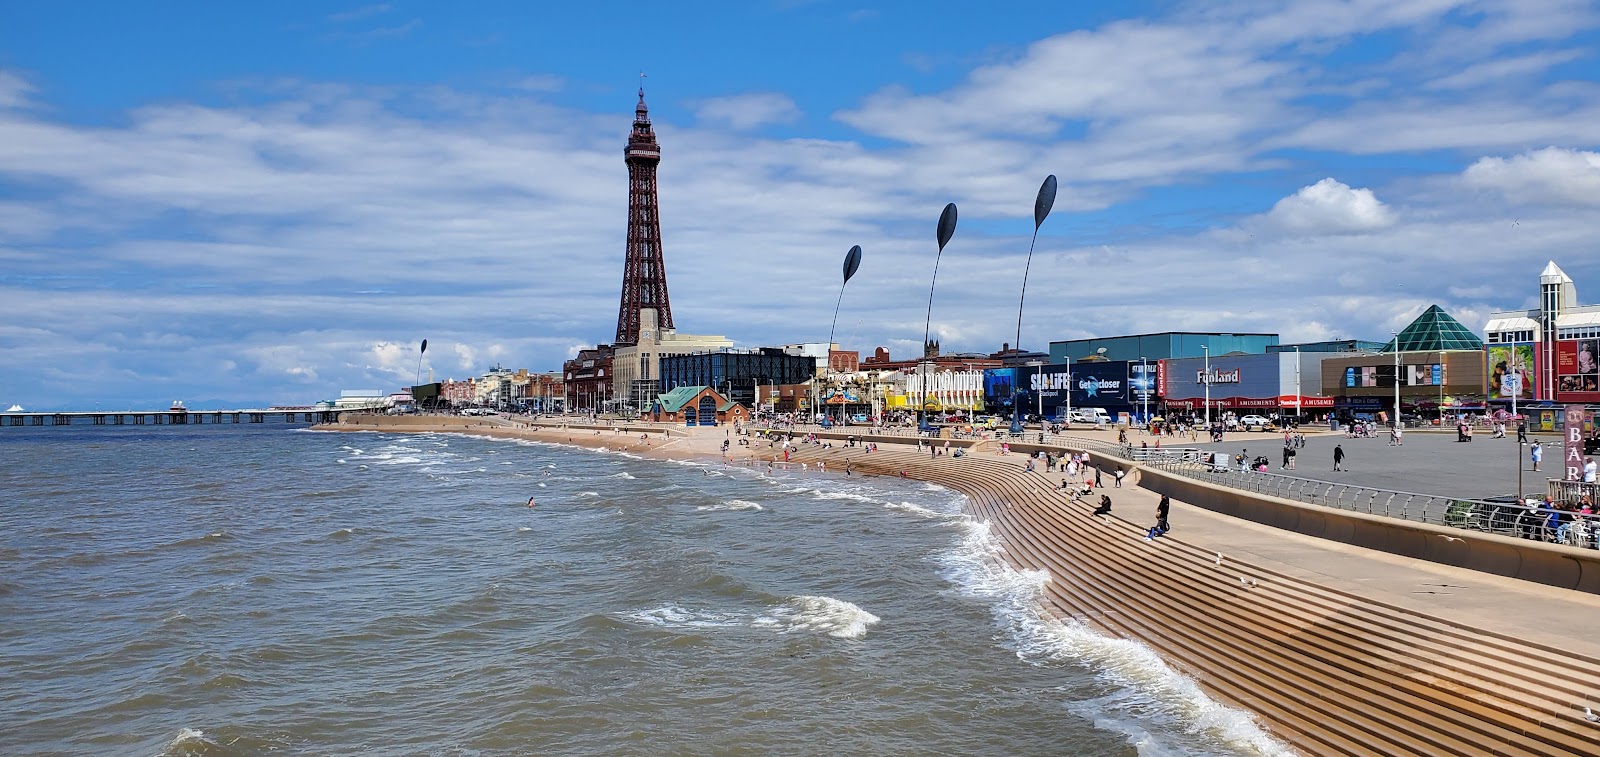 Blackpool Plajı'in fotoğrafı gri kum yüzey ile